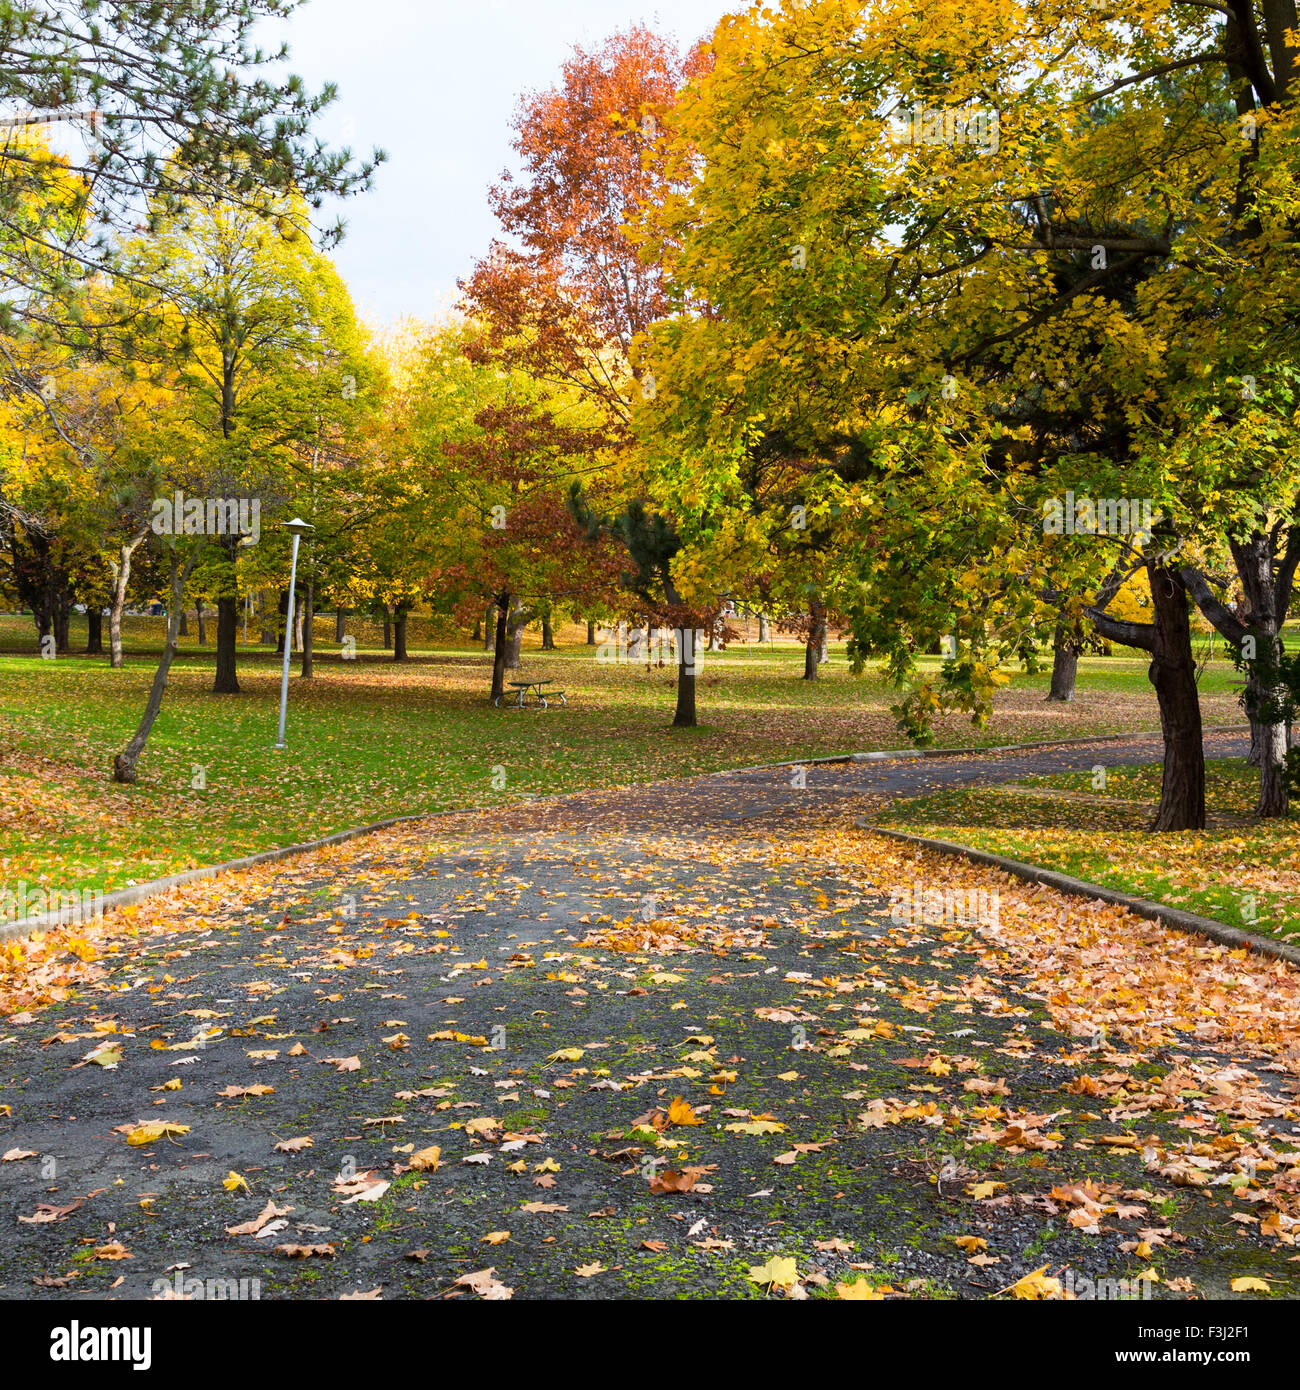 Beau sentier piétonnier au Canada à l'automne. Feuilles d'érable colorées peut être vu sur le sol et sur les arbres de chaque côté de la Banque D'Images